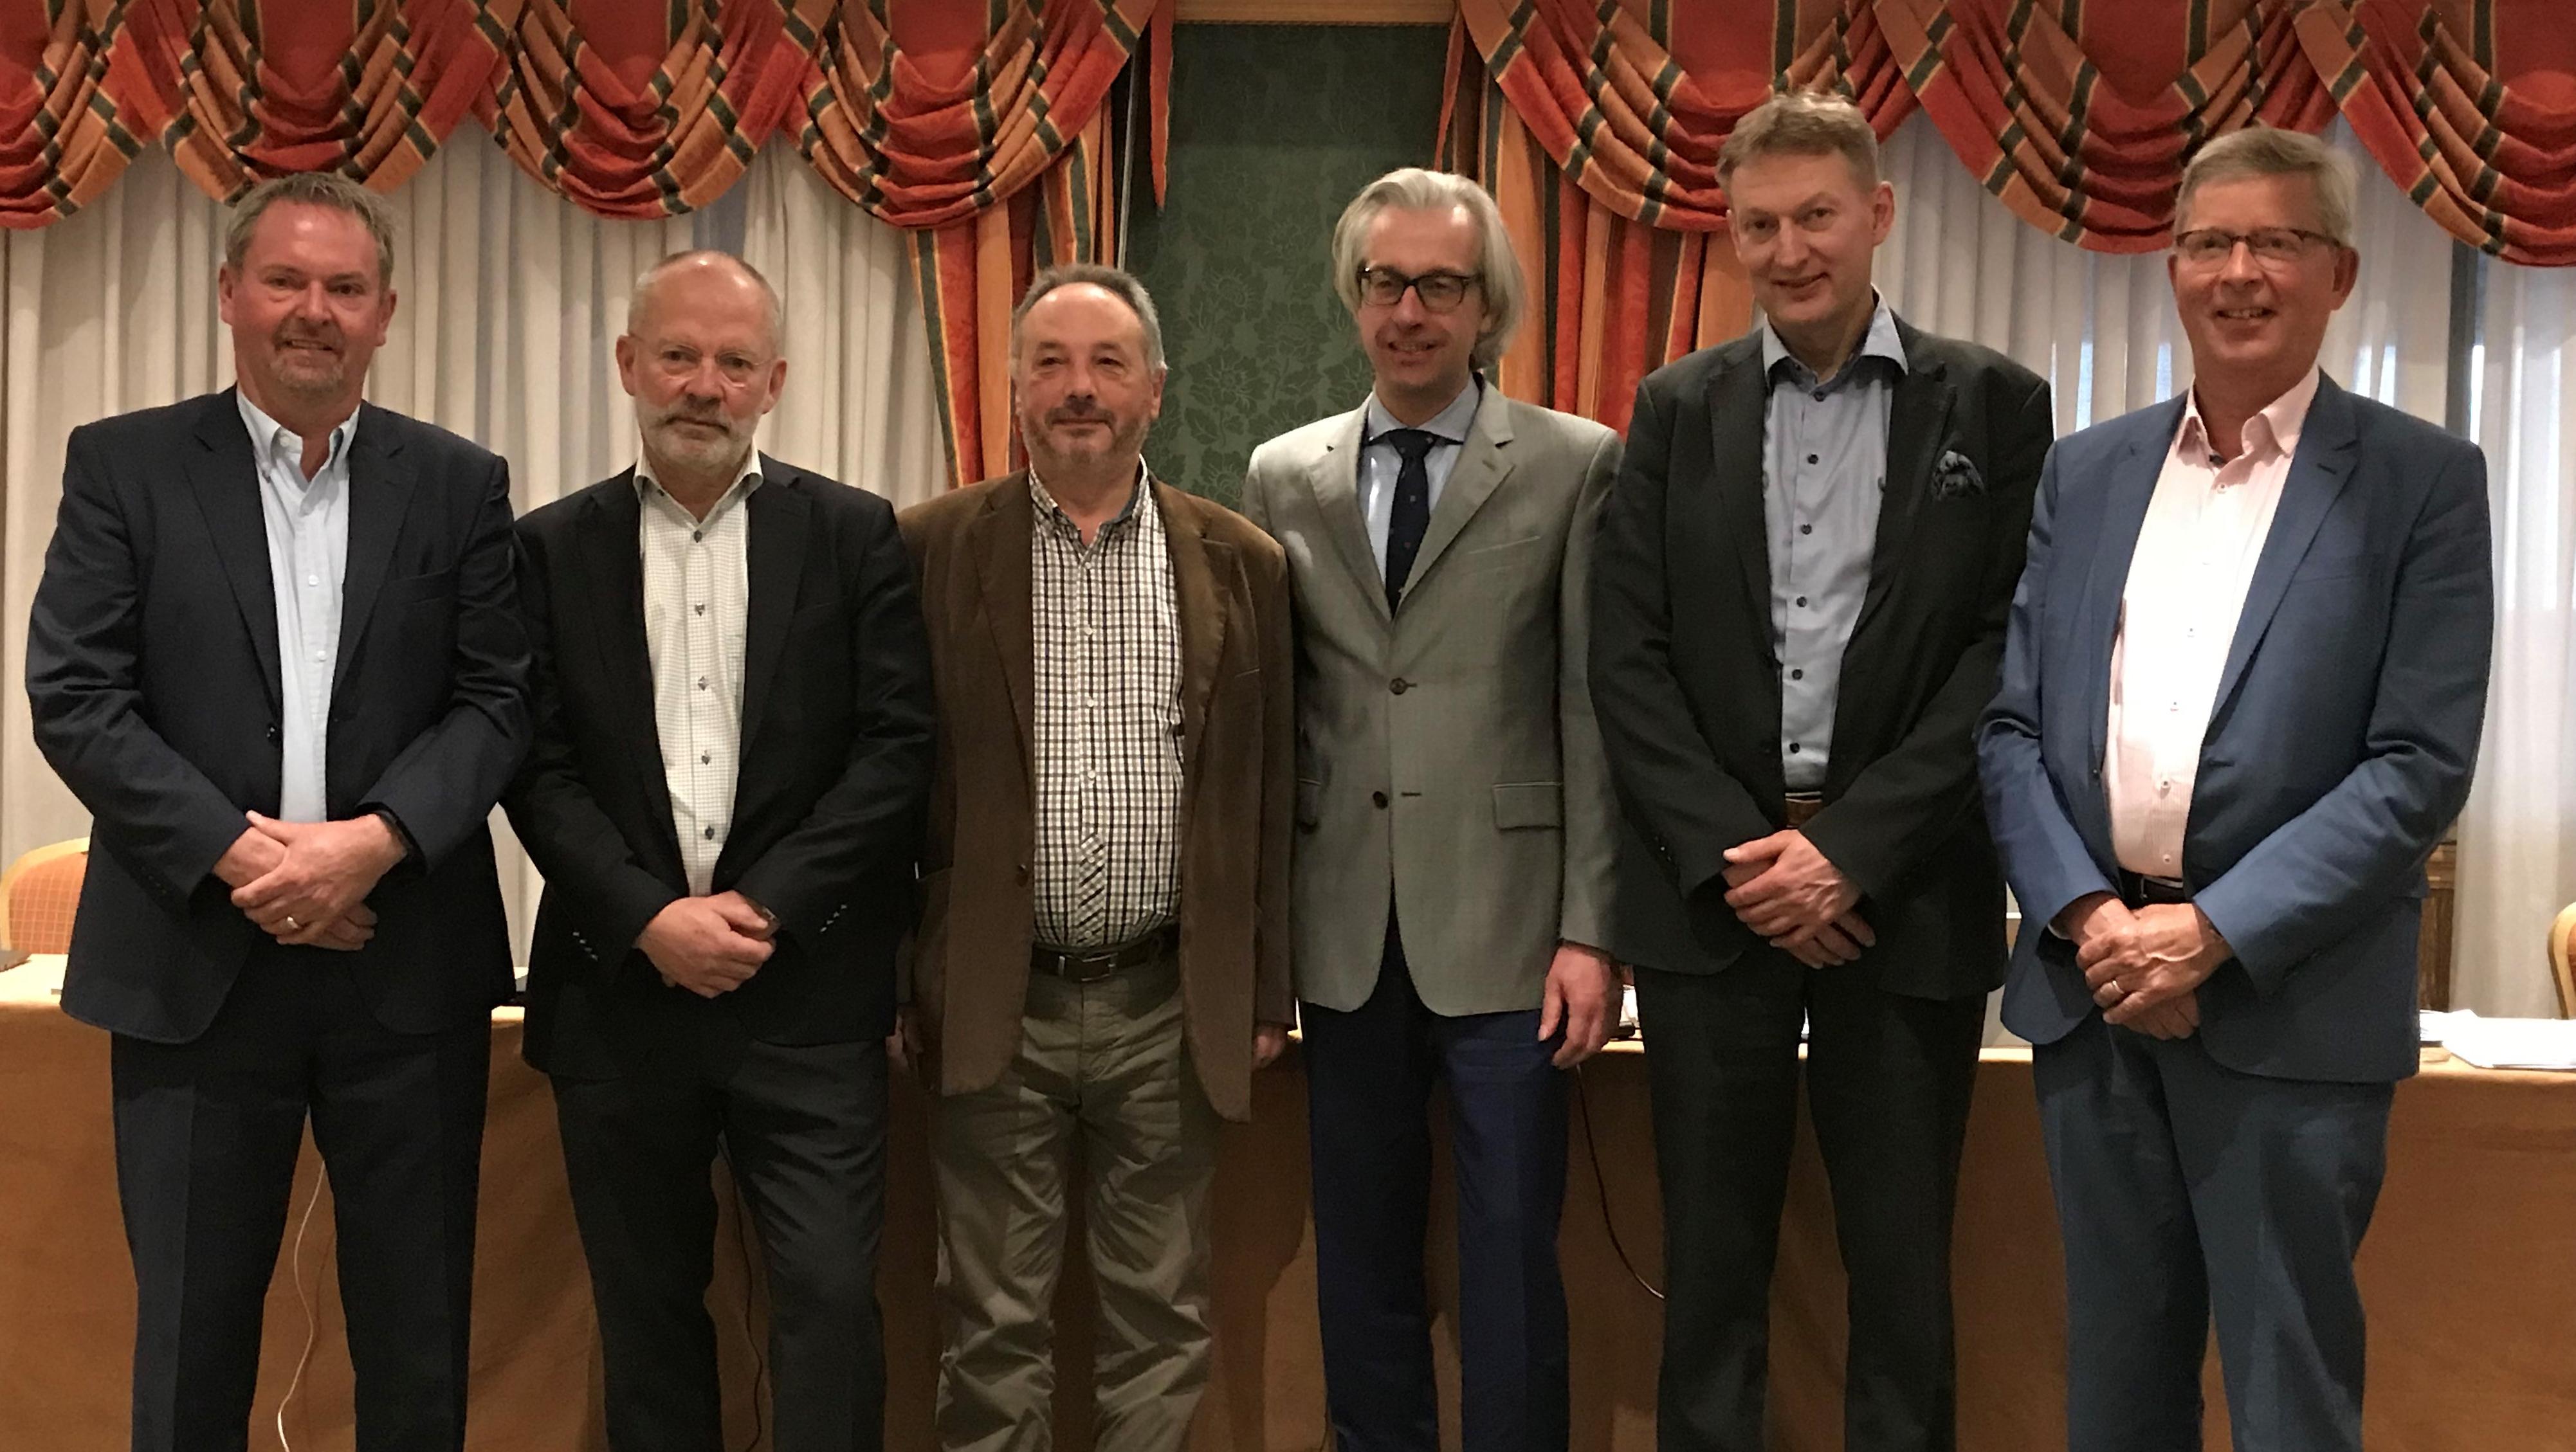 De gauche à droite, les membres du Comité de Direction d’ETIM International Eric Piers, Sverker Skoglund, Ryszard D’Antoni, Hans Henning, Magnus Siren et Jan Janse.